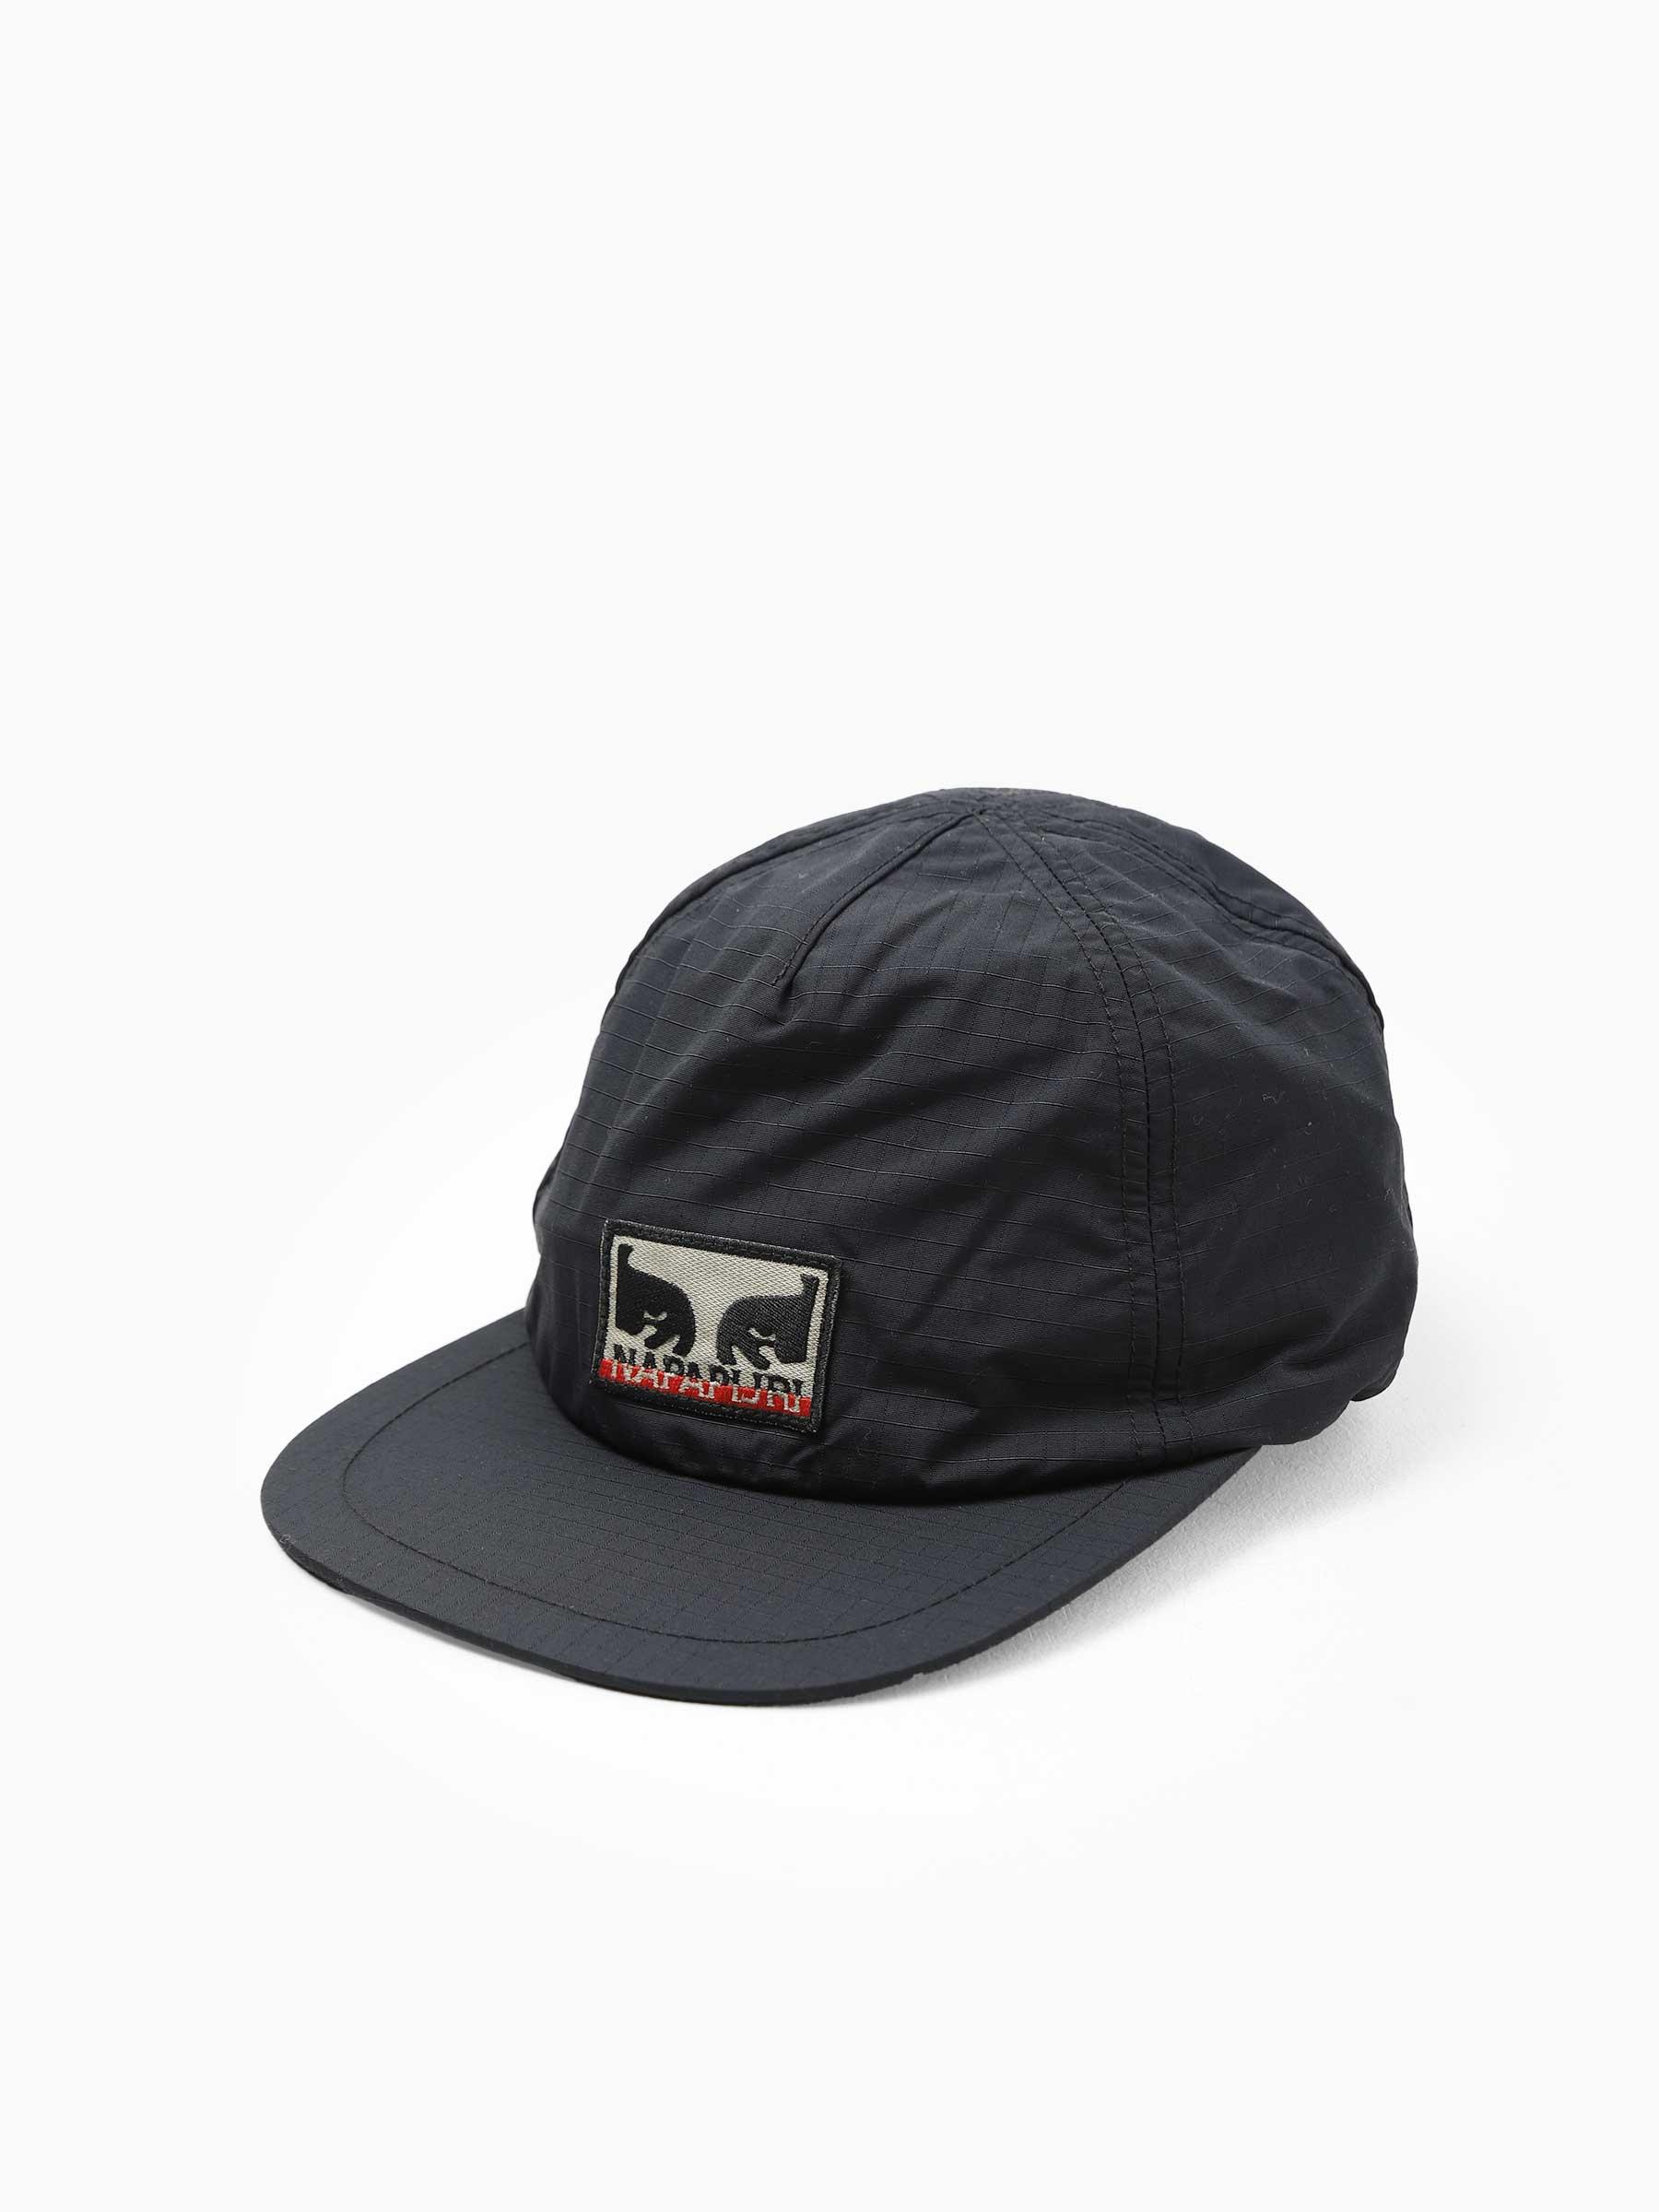 Obey x Napapijri Hat Black NA4HMN-BLK